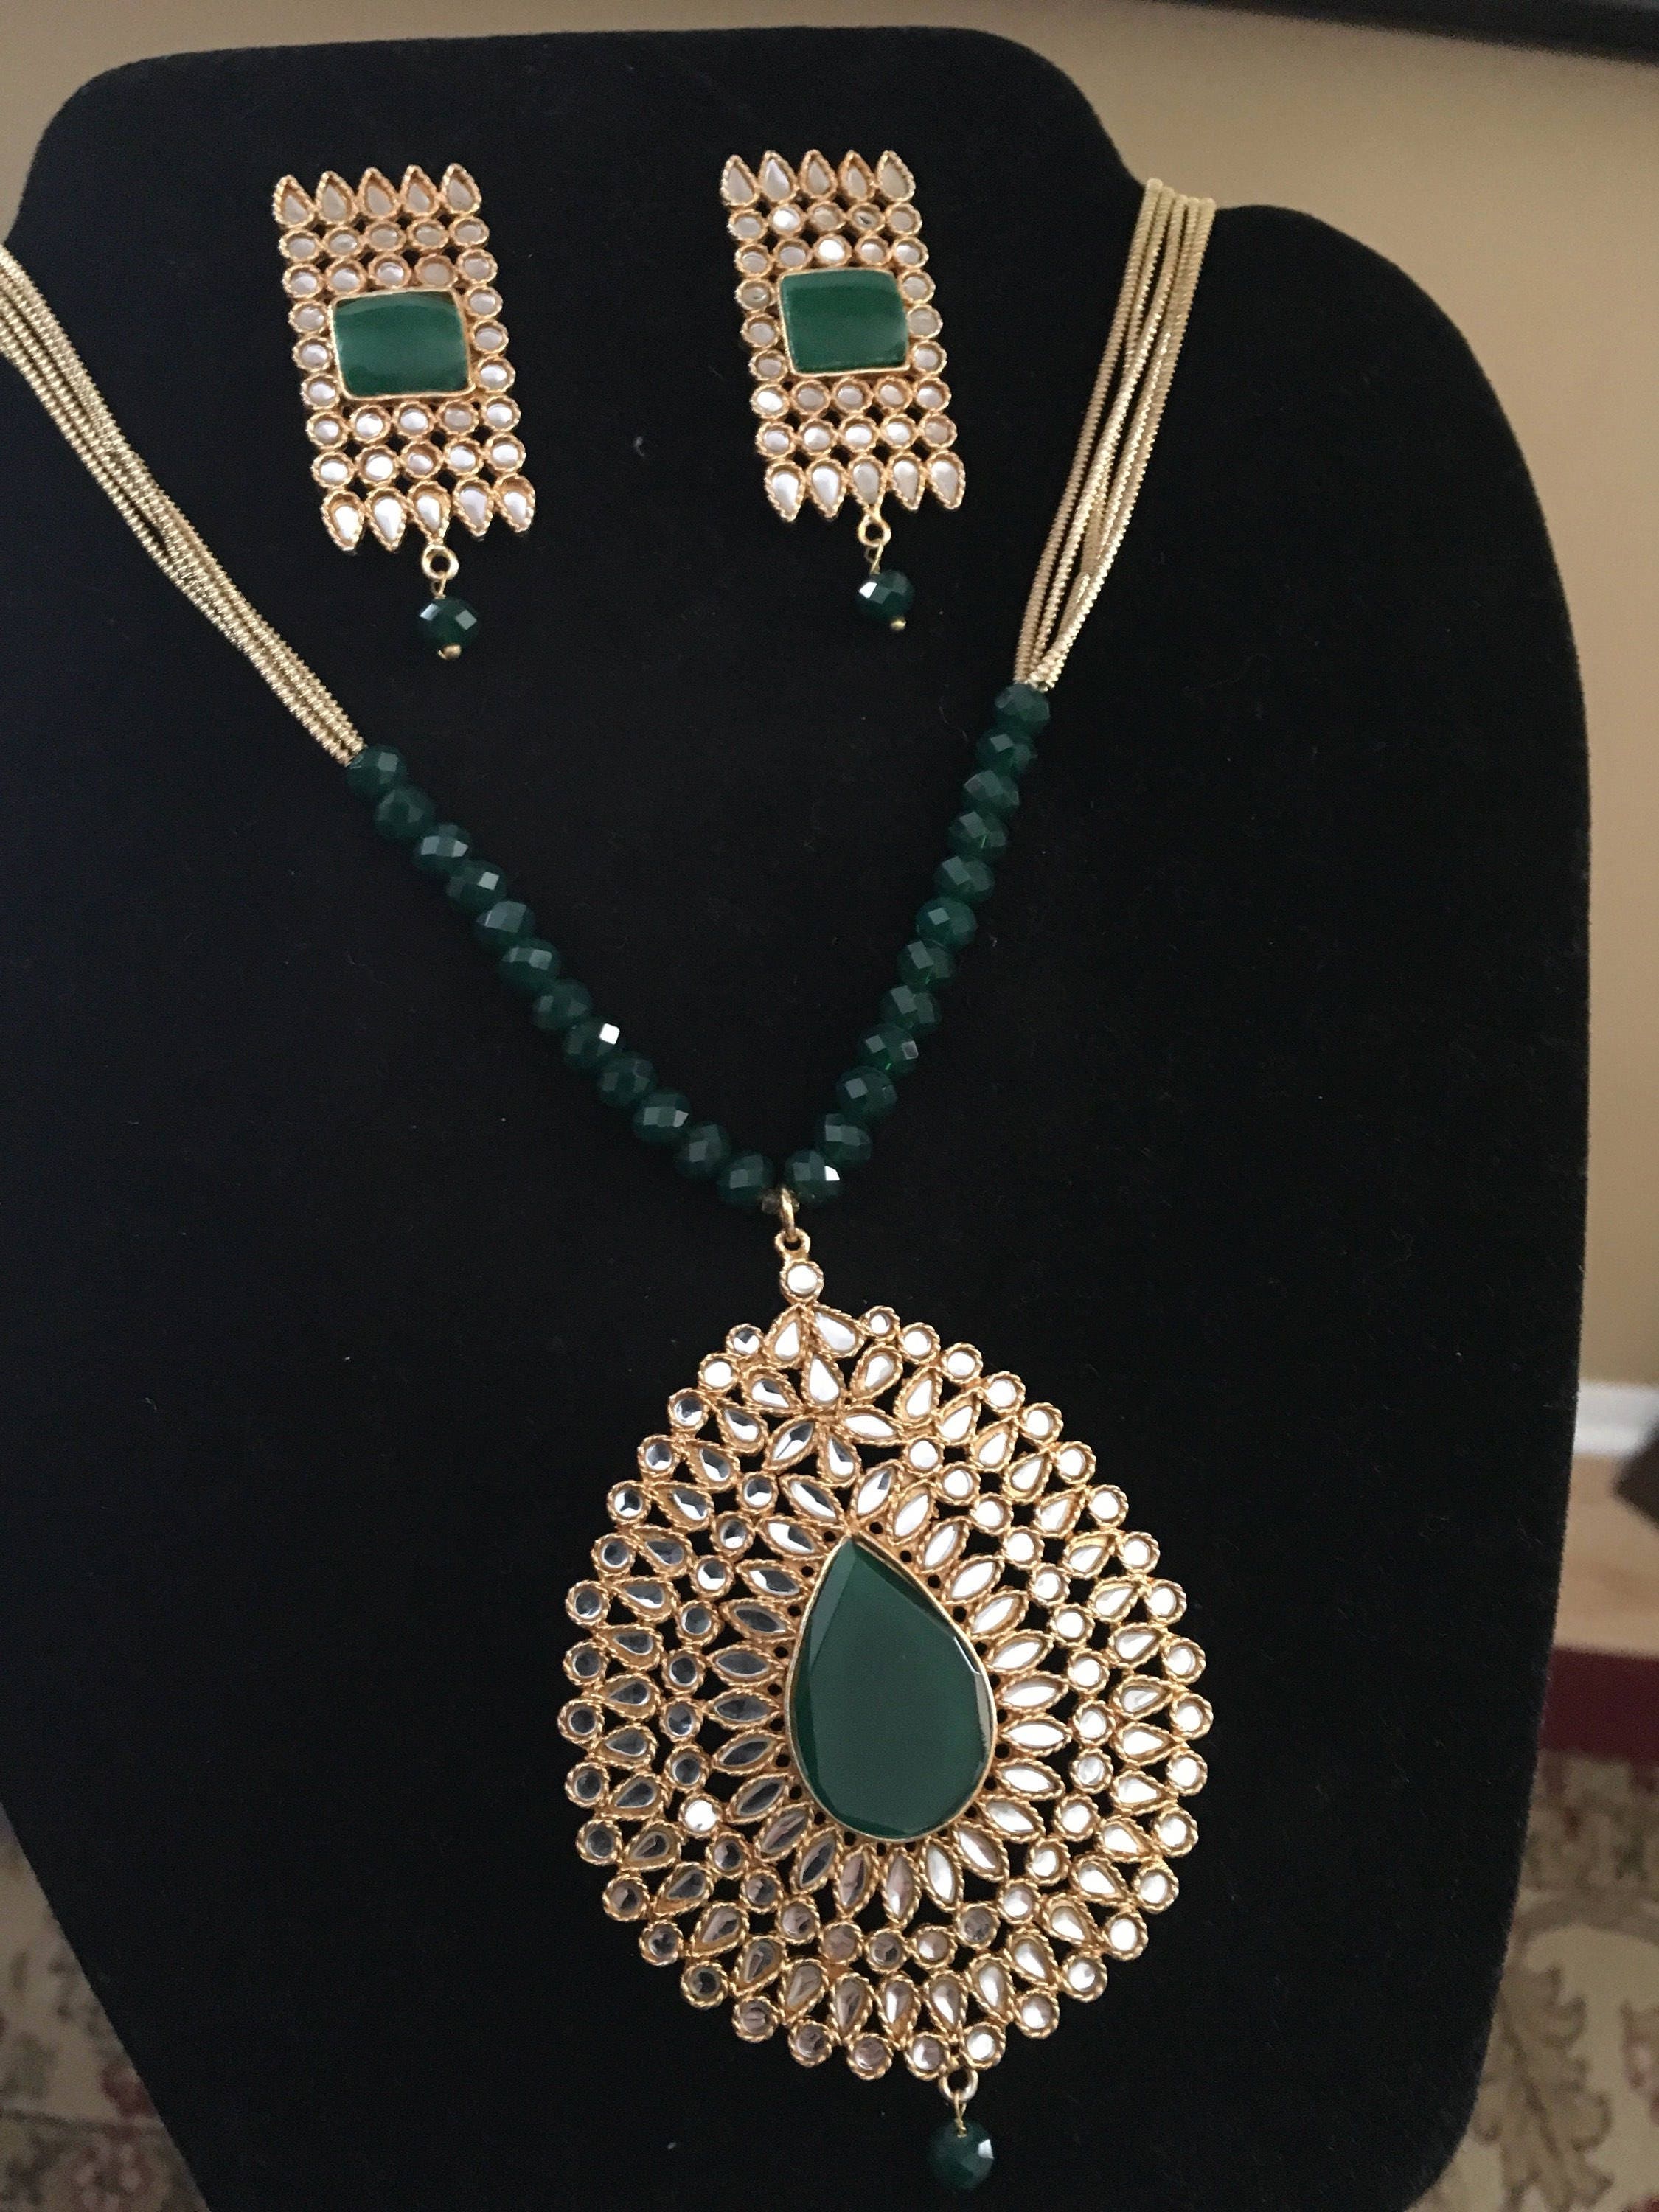 Stylish jewelry kundan jewelry indian jewelry pakistani | Etsy